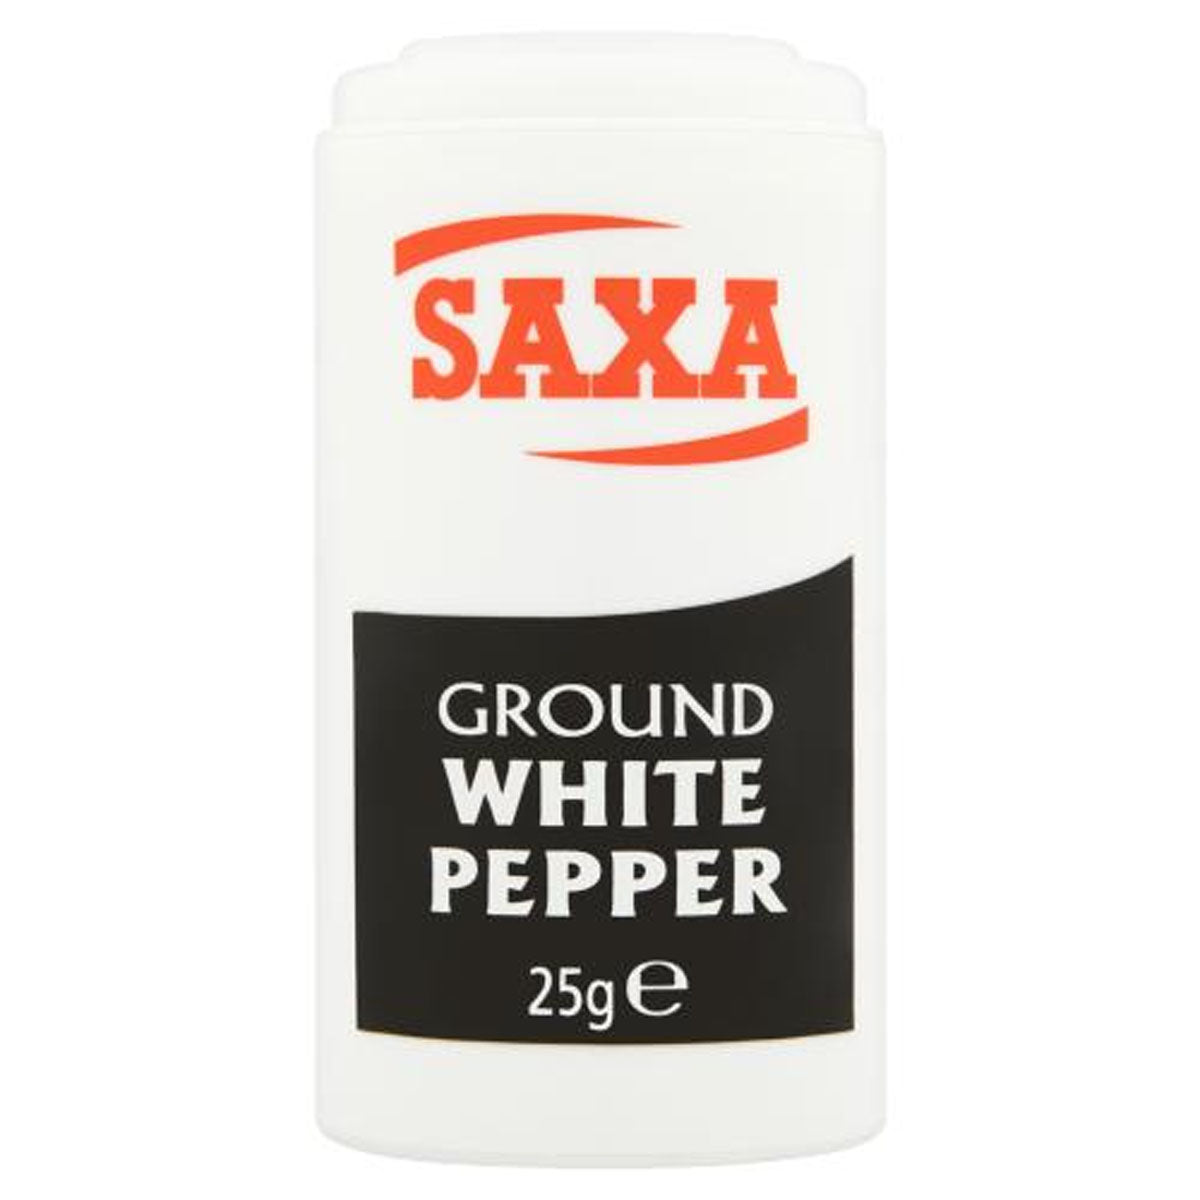 Saxa - Ground White Pepper - 25g Ground White Pepper.